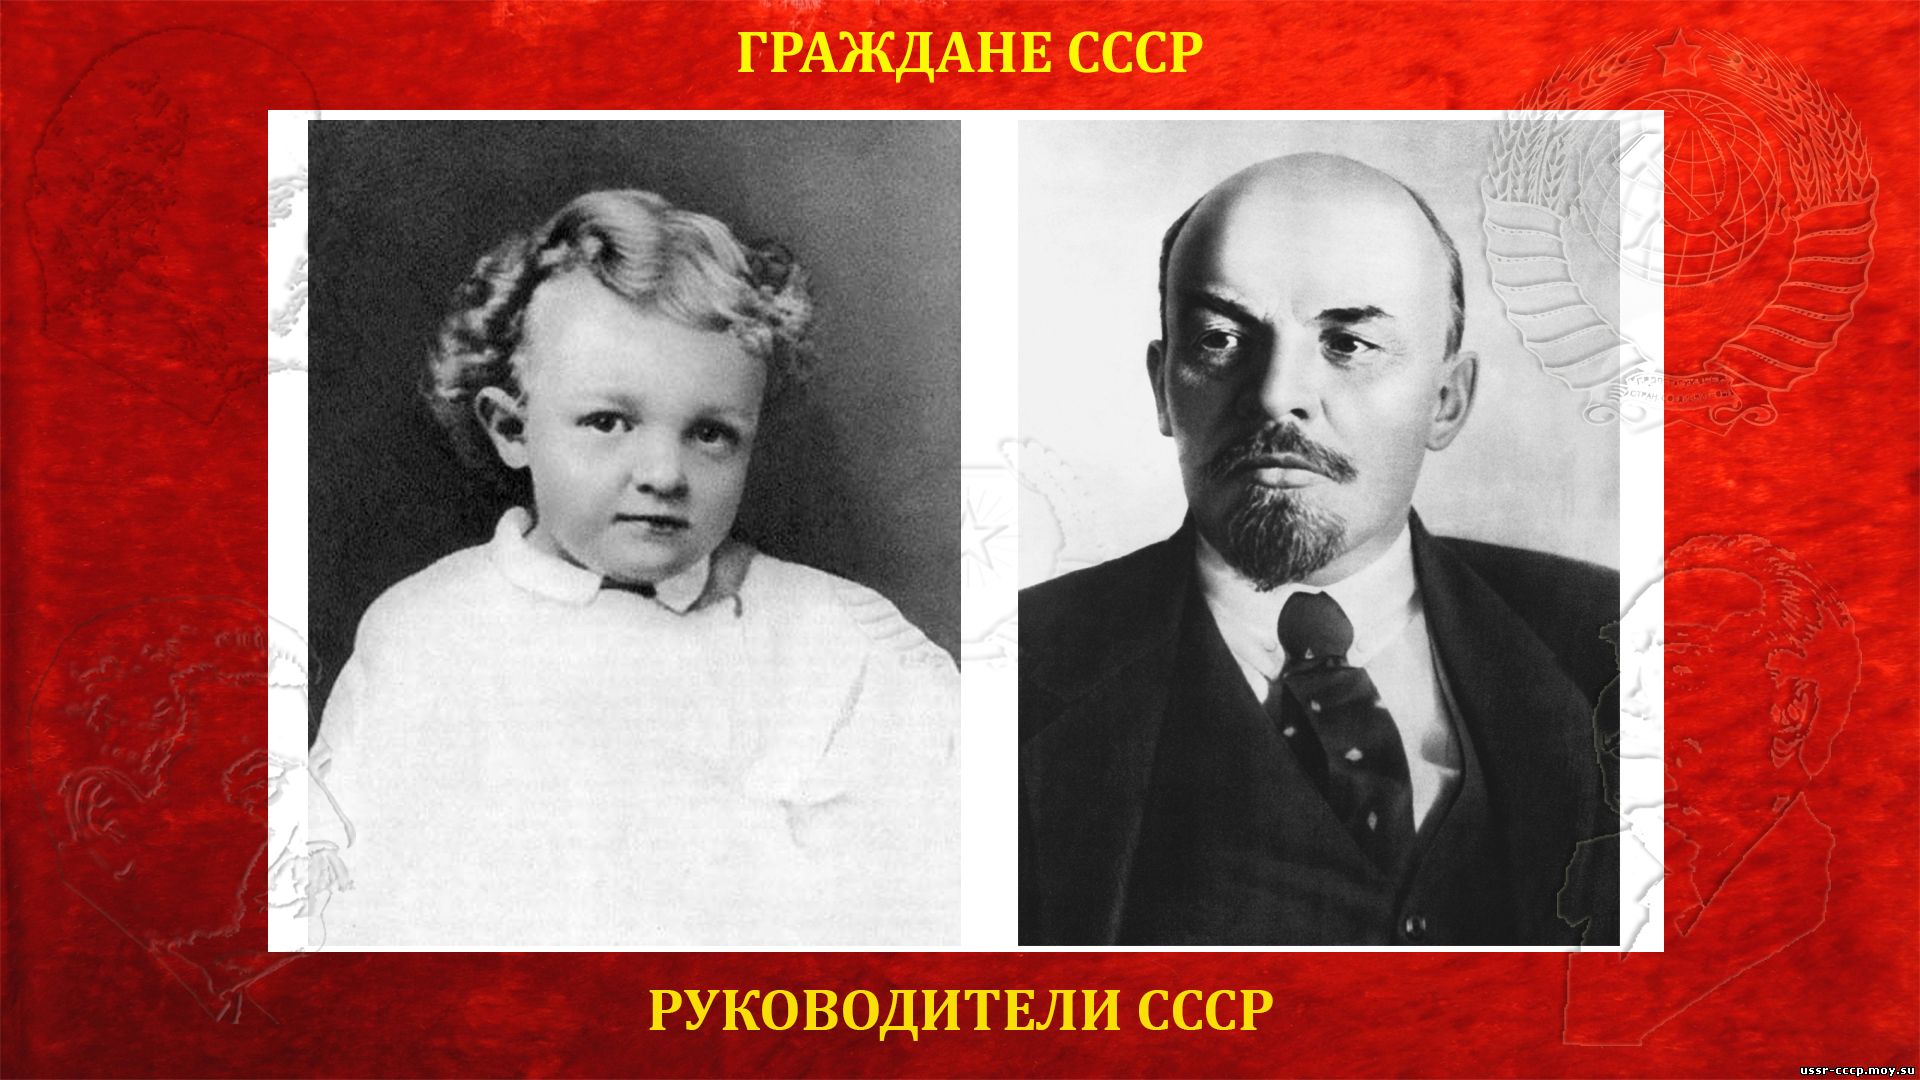 Ленин (Ульянов) Владимир Ильич — Вождь и руководитель СССР 